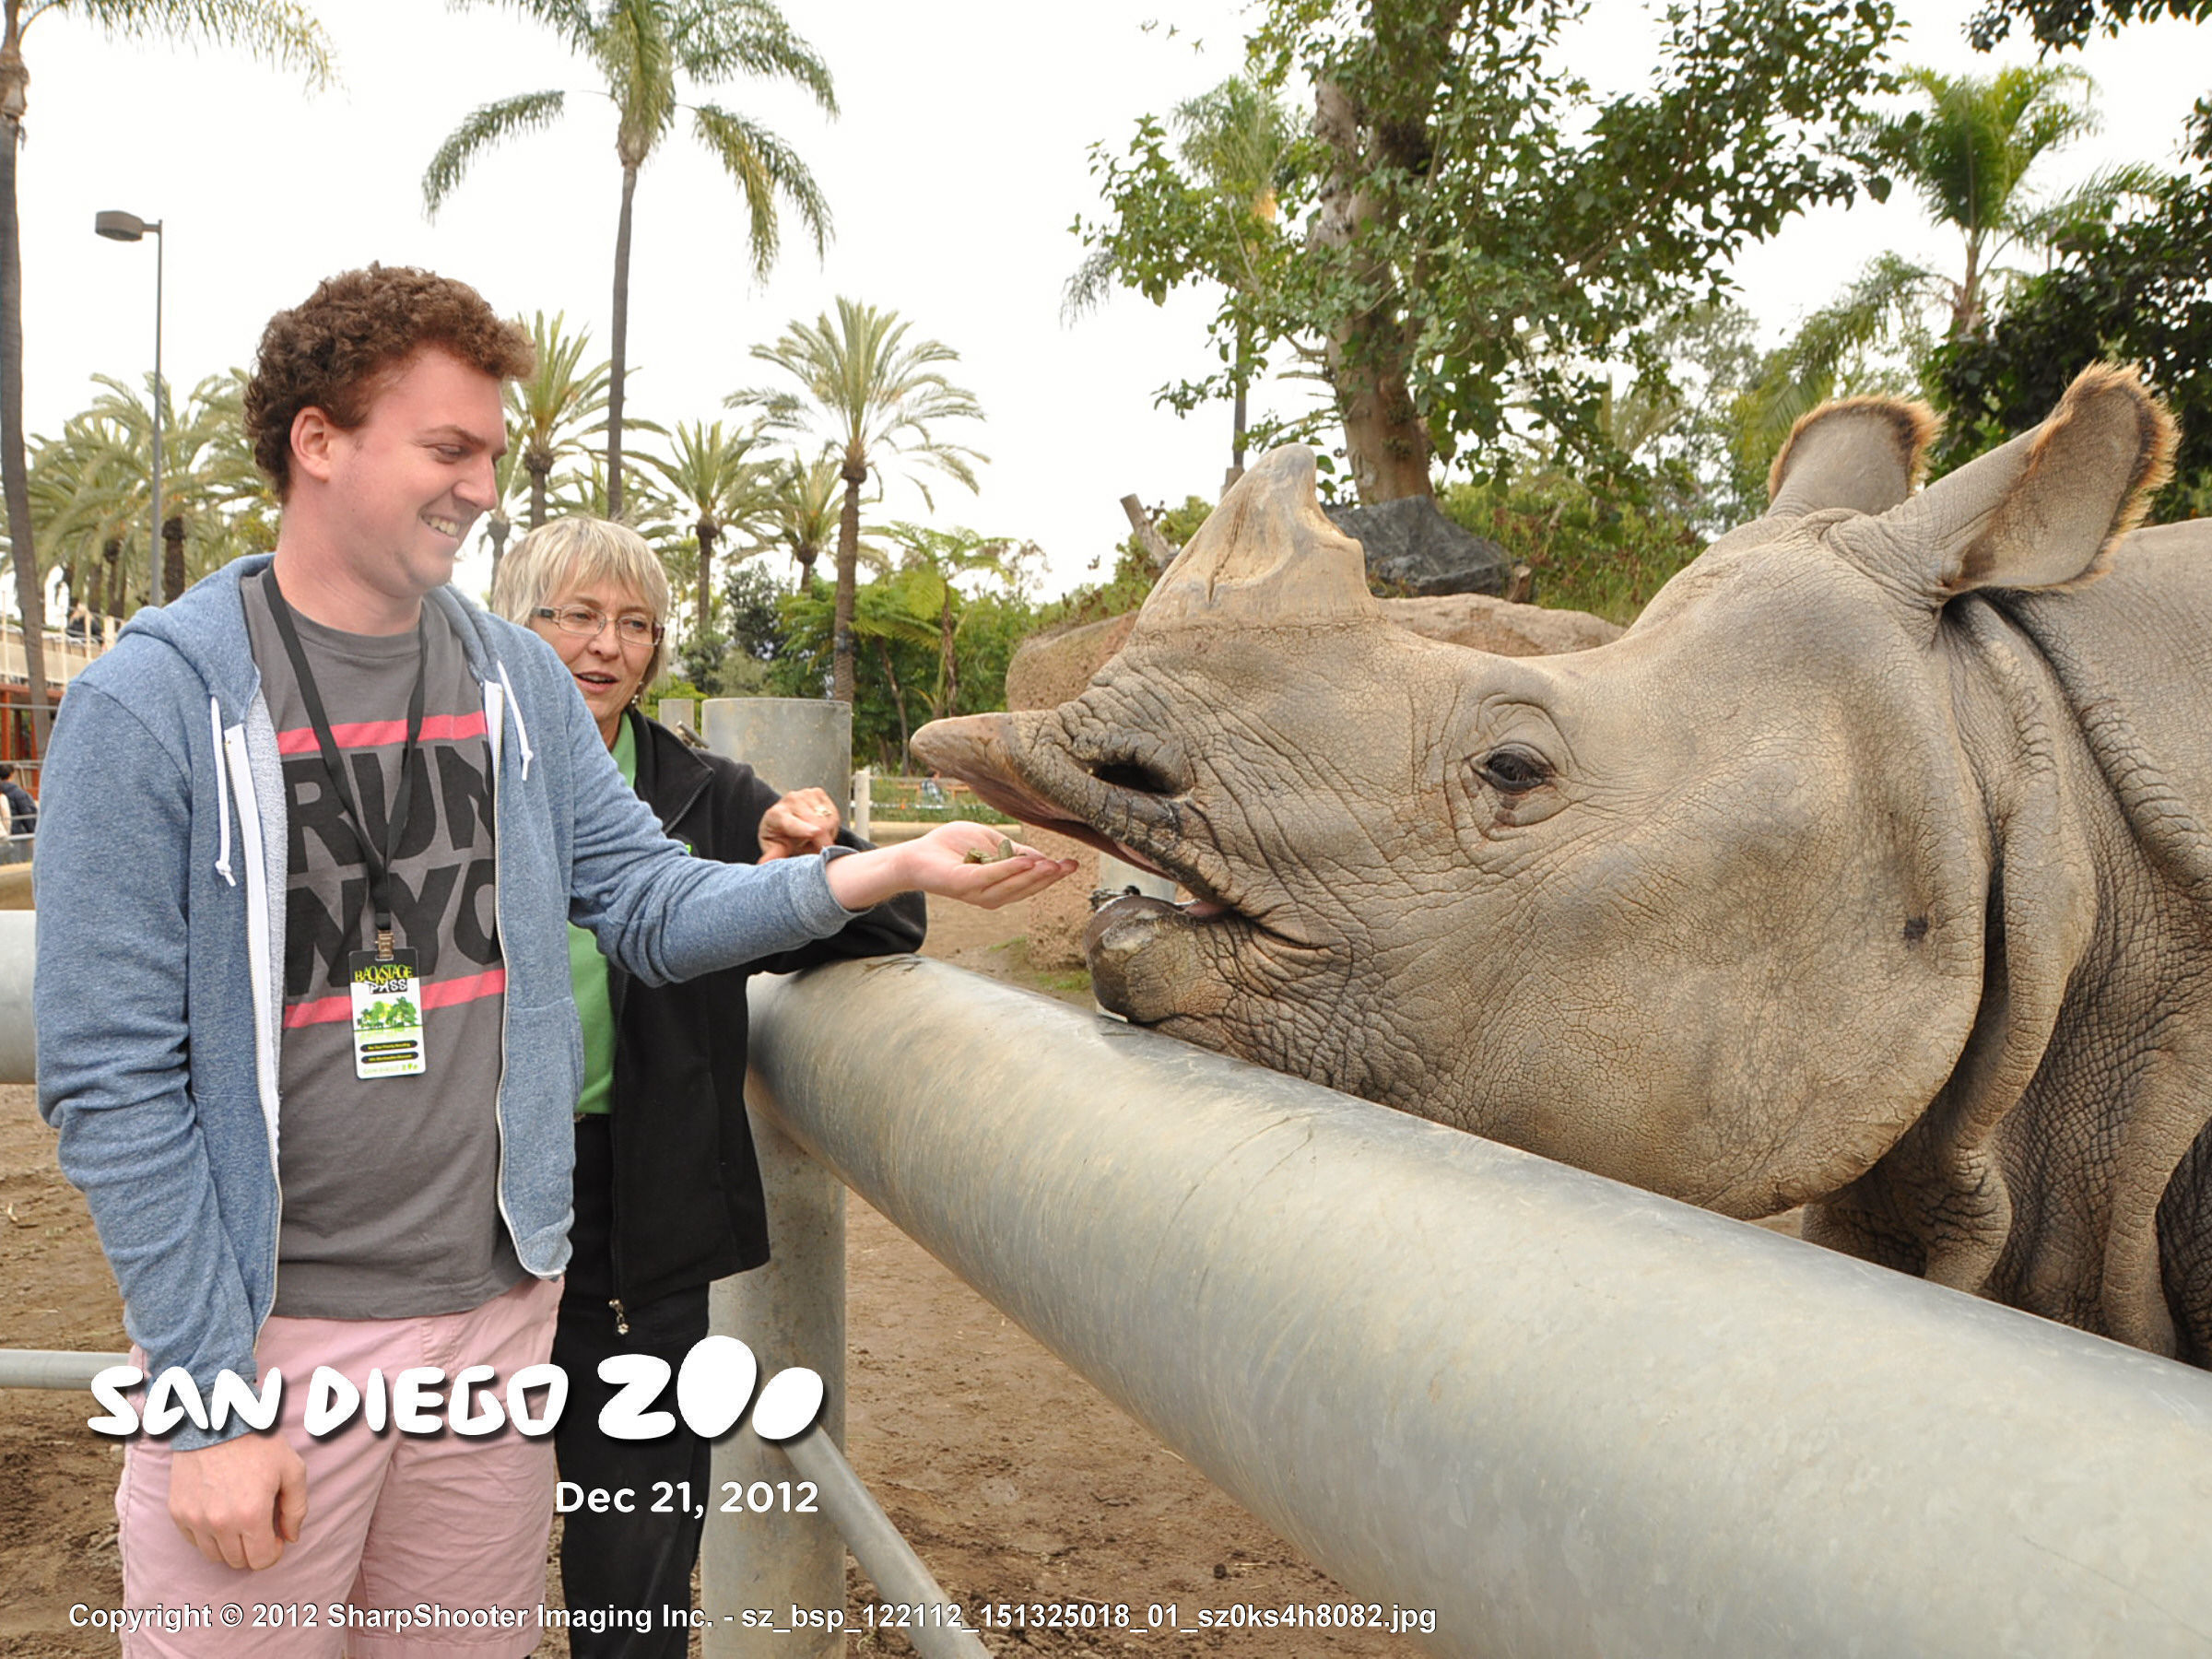 Feeding a rhinoceros during a San Diego Zoo Animal Interactions program.